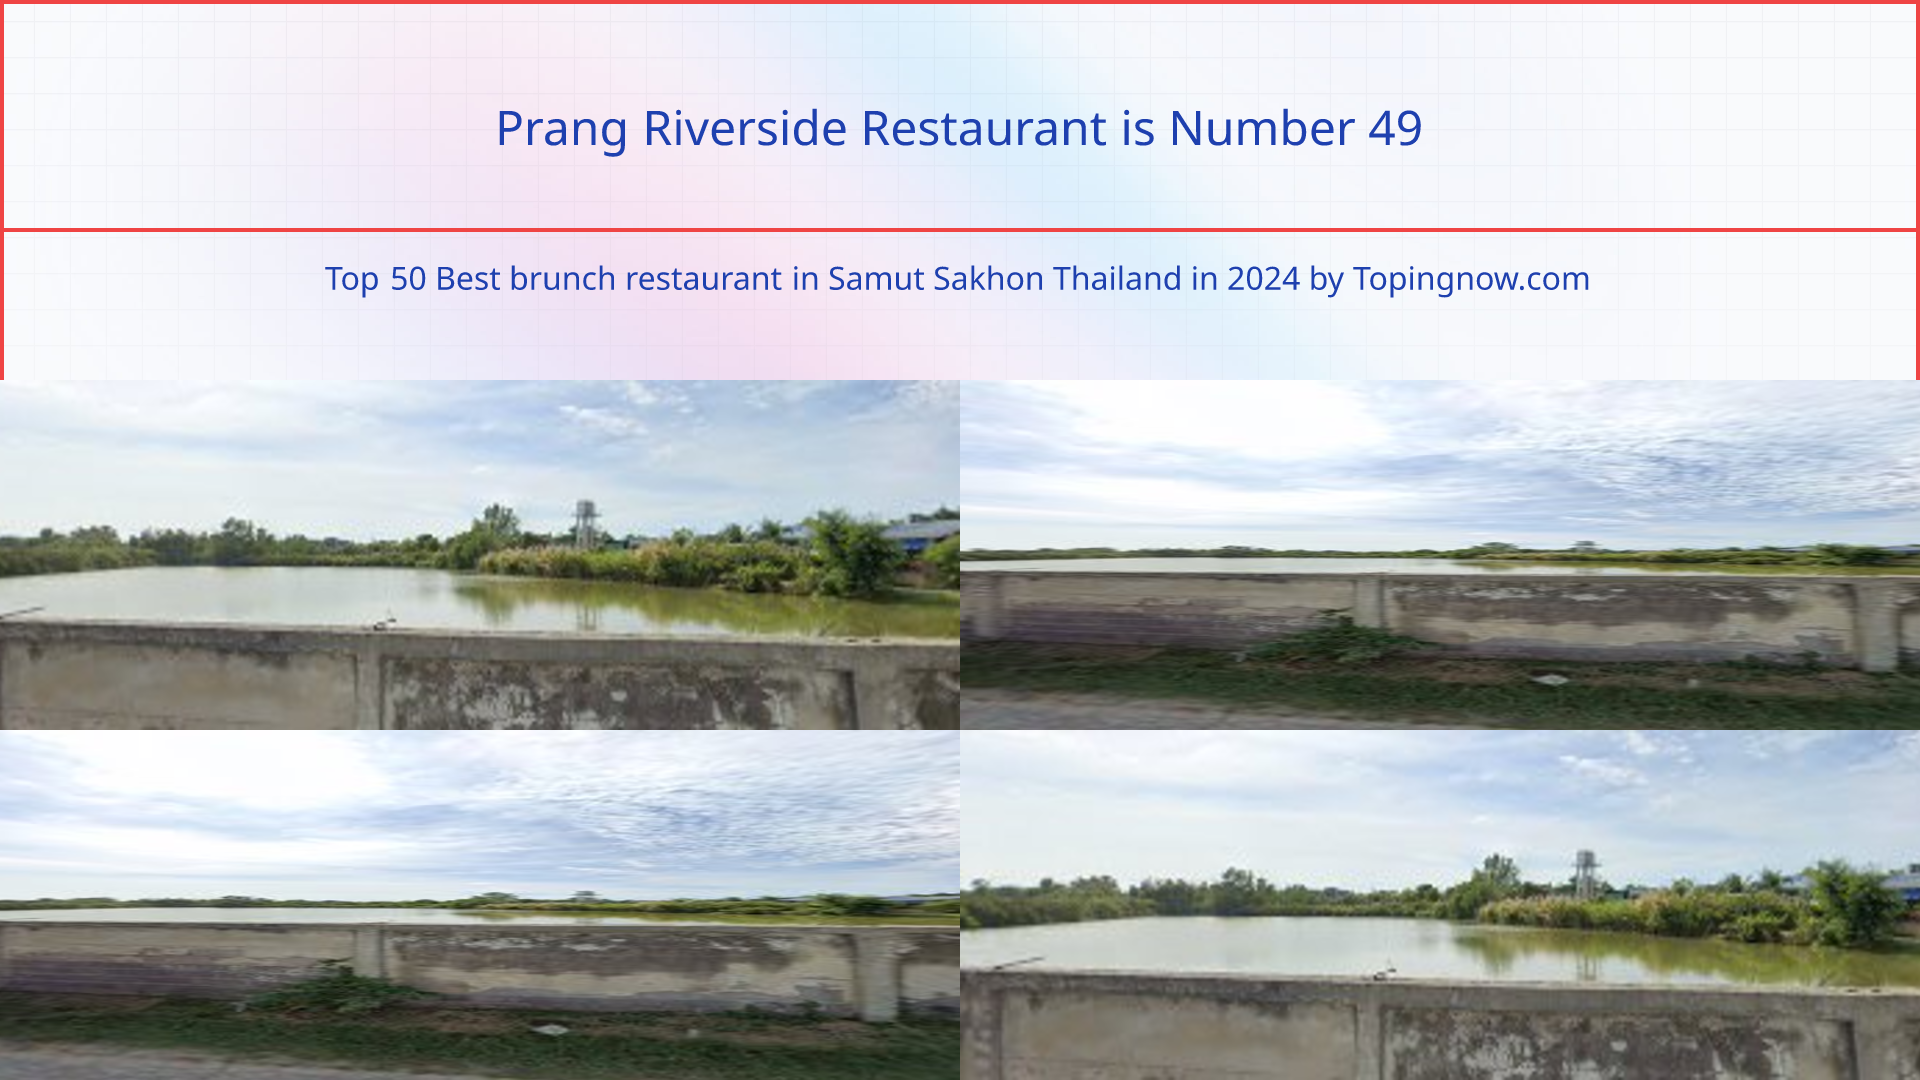 Prang Riverside Restaurant: Top 50 Best brunch restaurant in Samut Sakhon Thailand in 2024